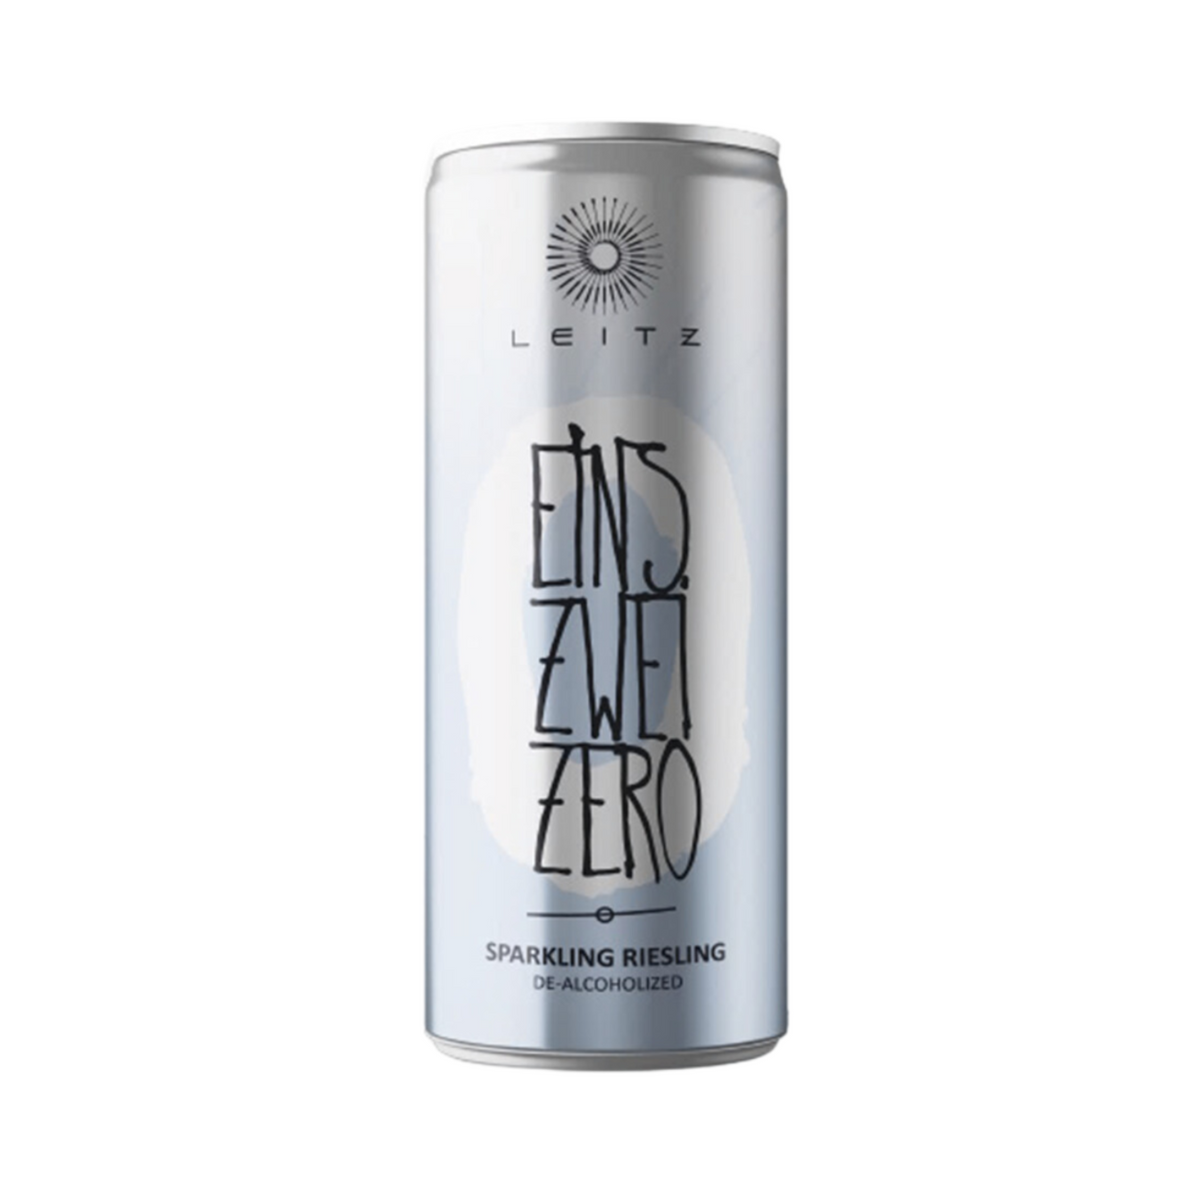 Leitz Eins-Zwei-Zero Sparkling Riesling 250ml | Non-Alcoholic